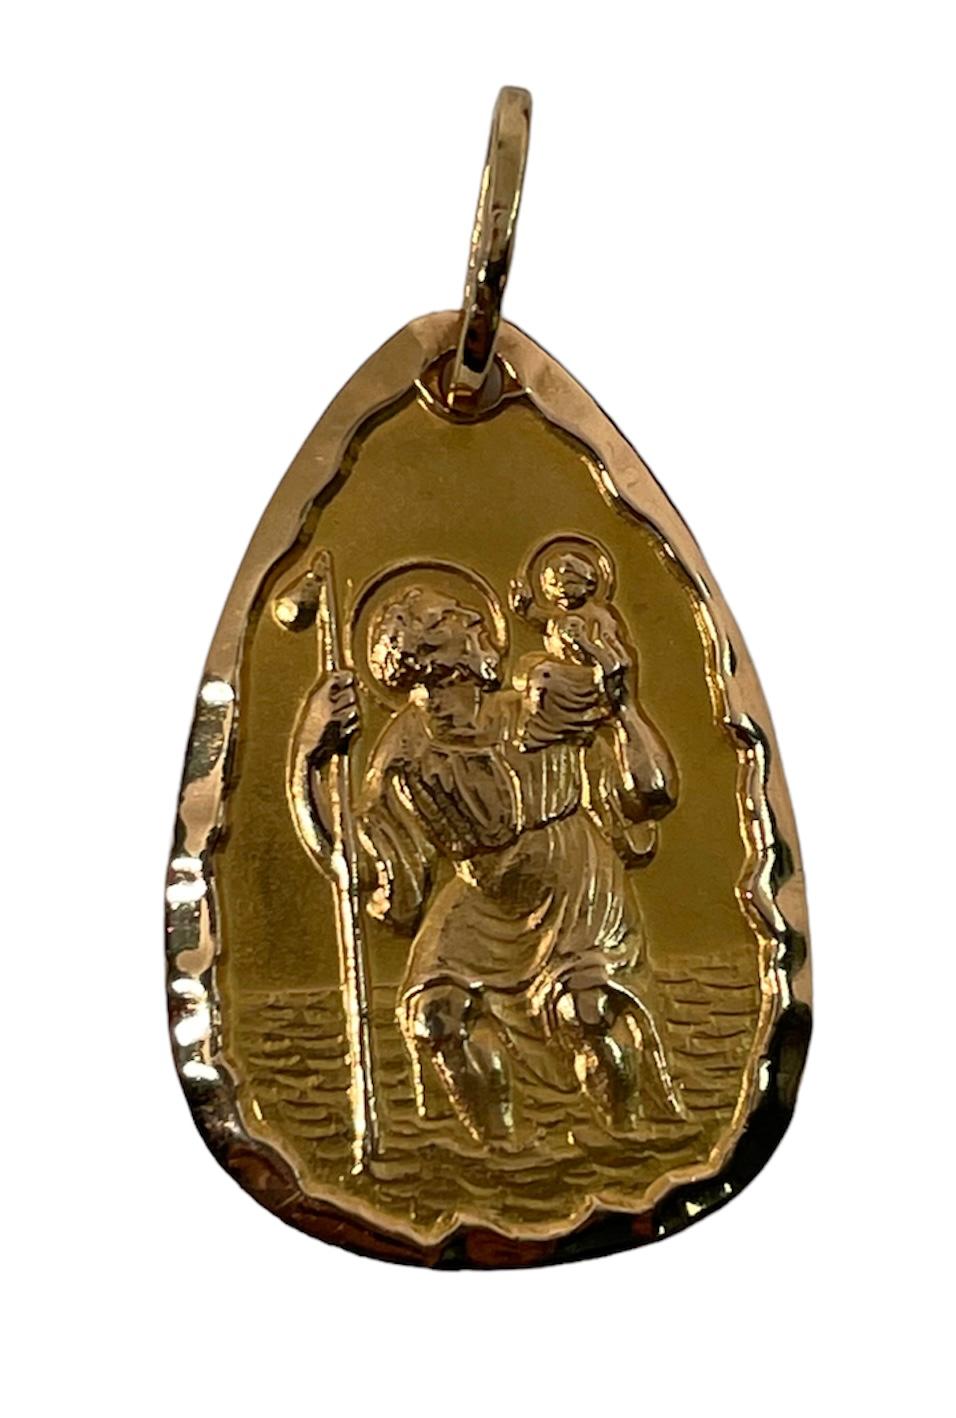 Voici une rare médaille religieuse en or jaune 750 (18k) représentant Saint Christophe. Elle est en or massif de forme poire et représente une très belle sculpture de Saint Christophe qui porte l'Enfant Jésus d'une main et son bâton de l'autre, tout